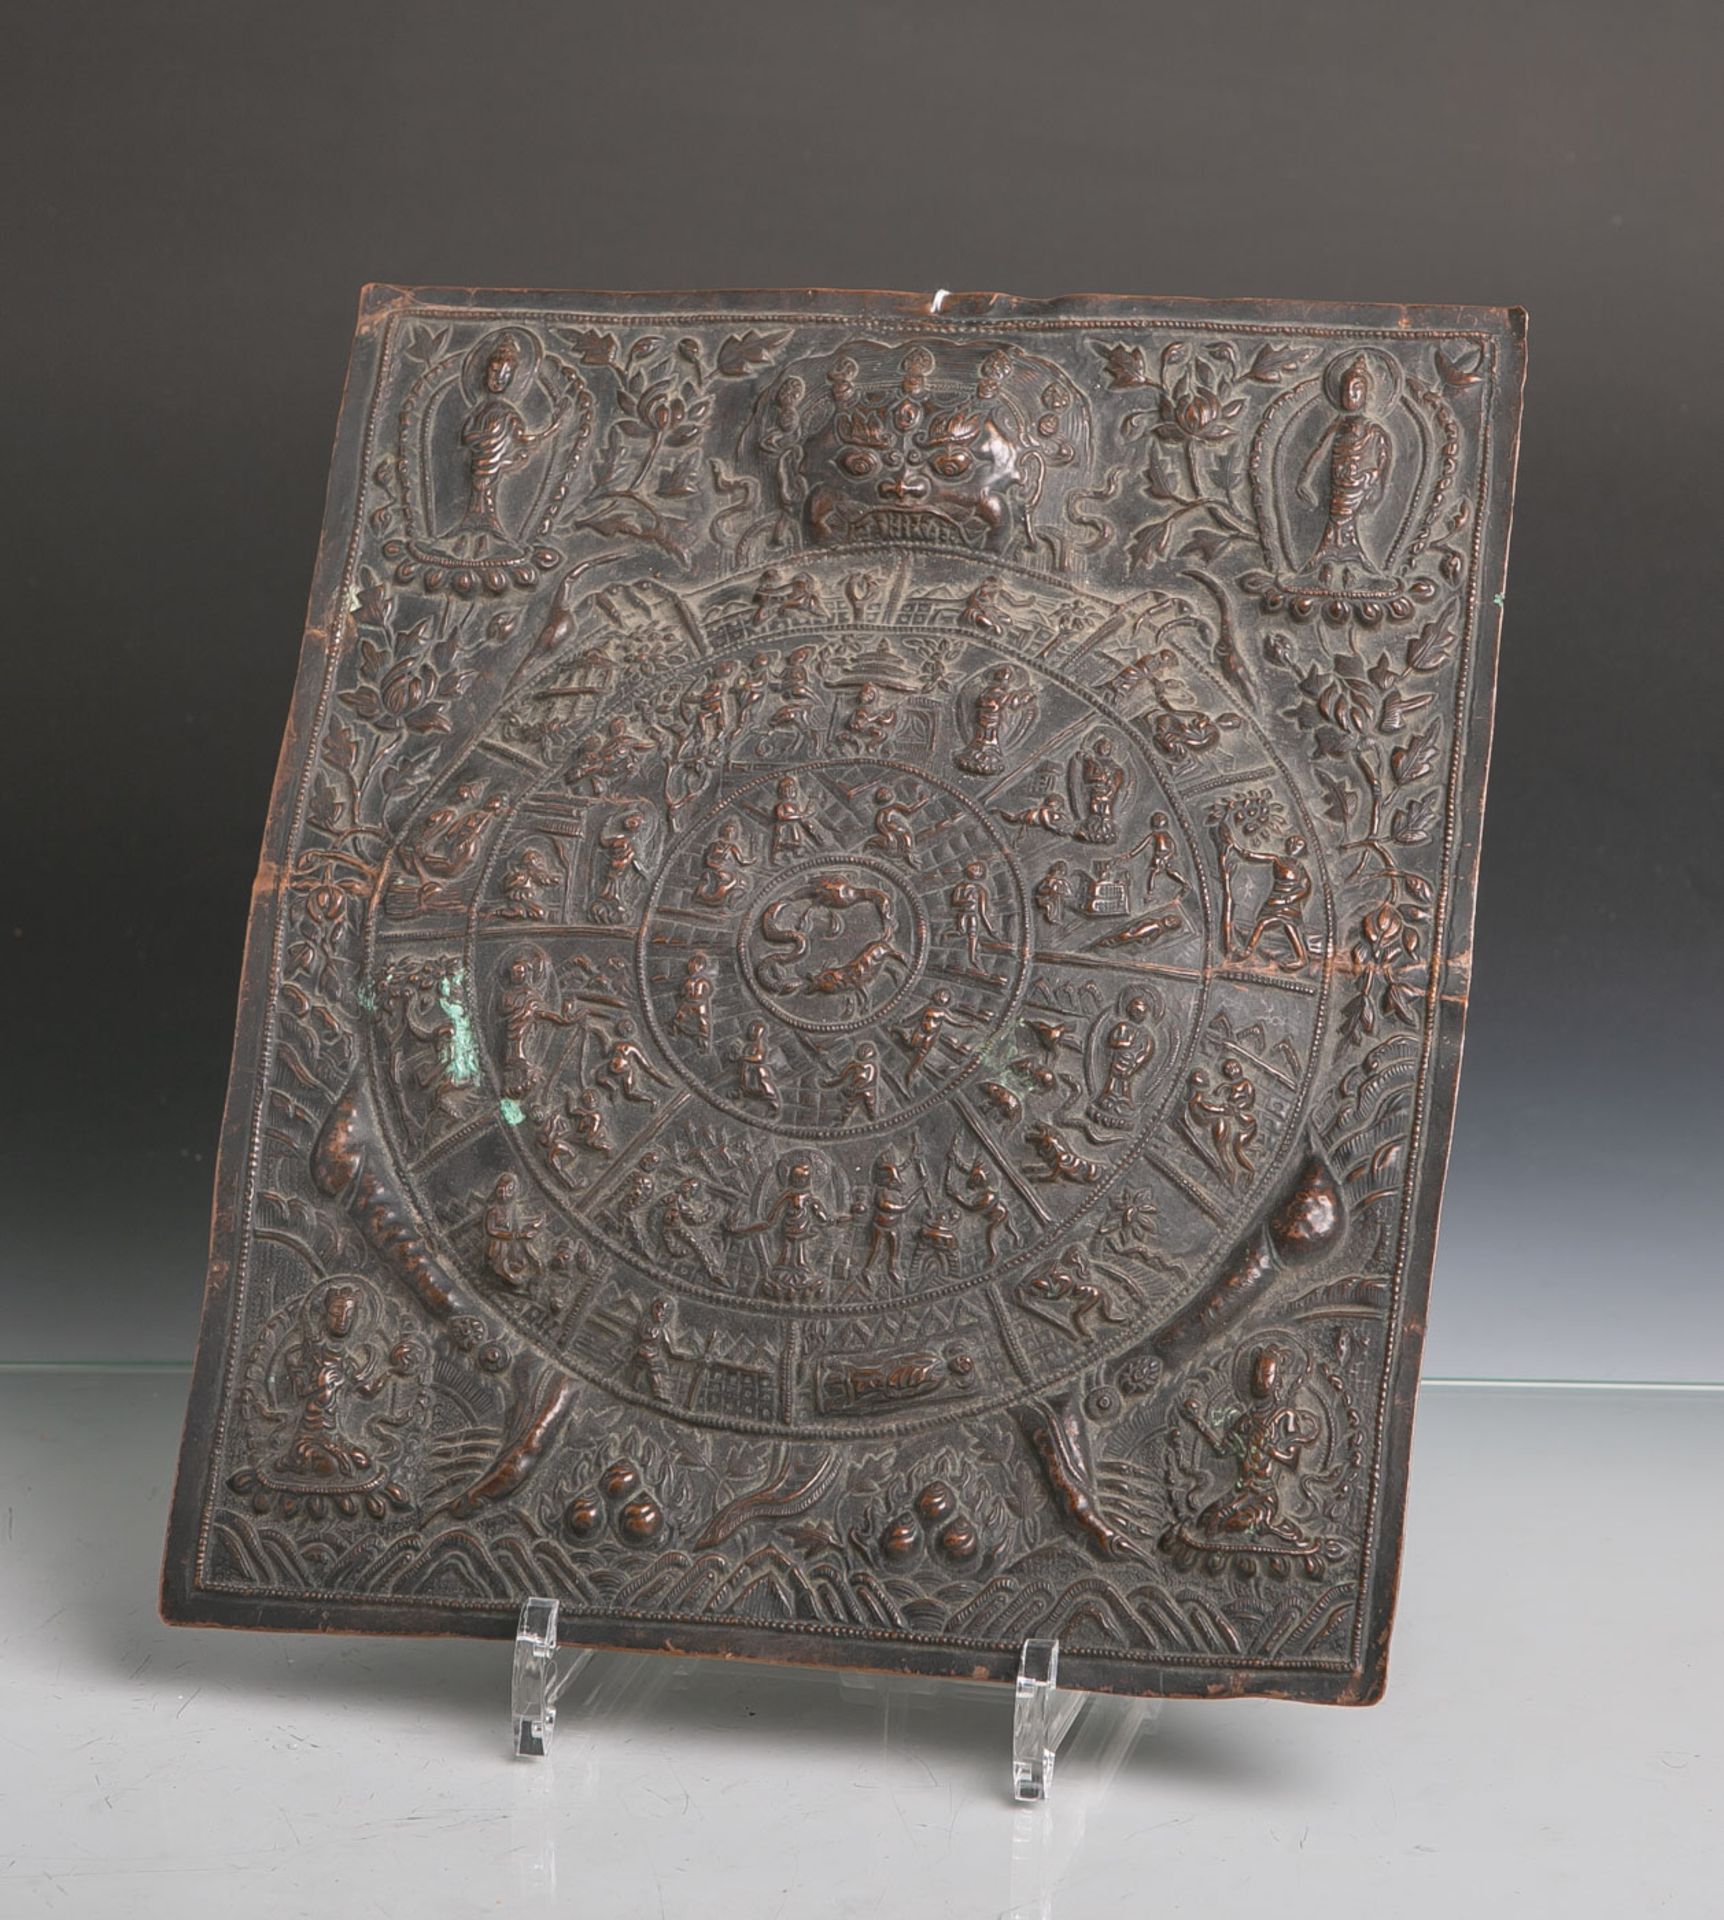 Samsara (Alter unbekannt), gearbeitet aus Kupferblech, Bezeichnung für den immerwährendenZyklus